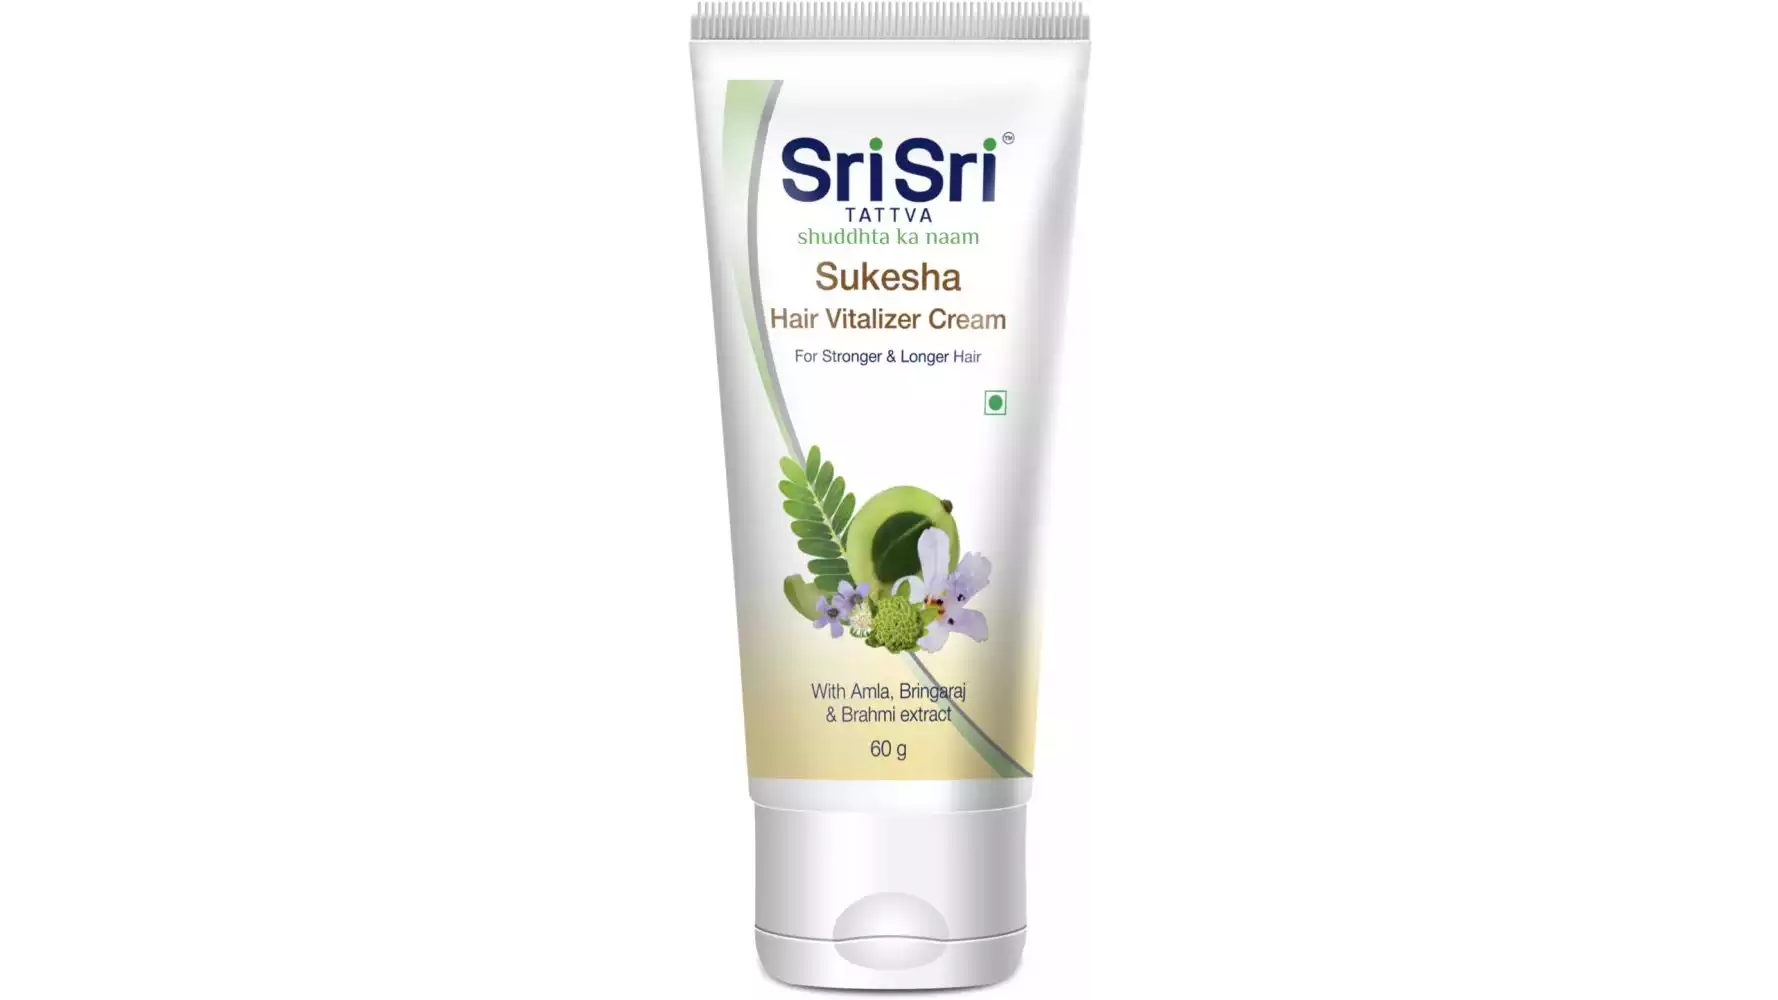 Sri Sri Tattva Sukesha Hair Vitalizer Cream (60g)